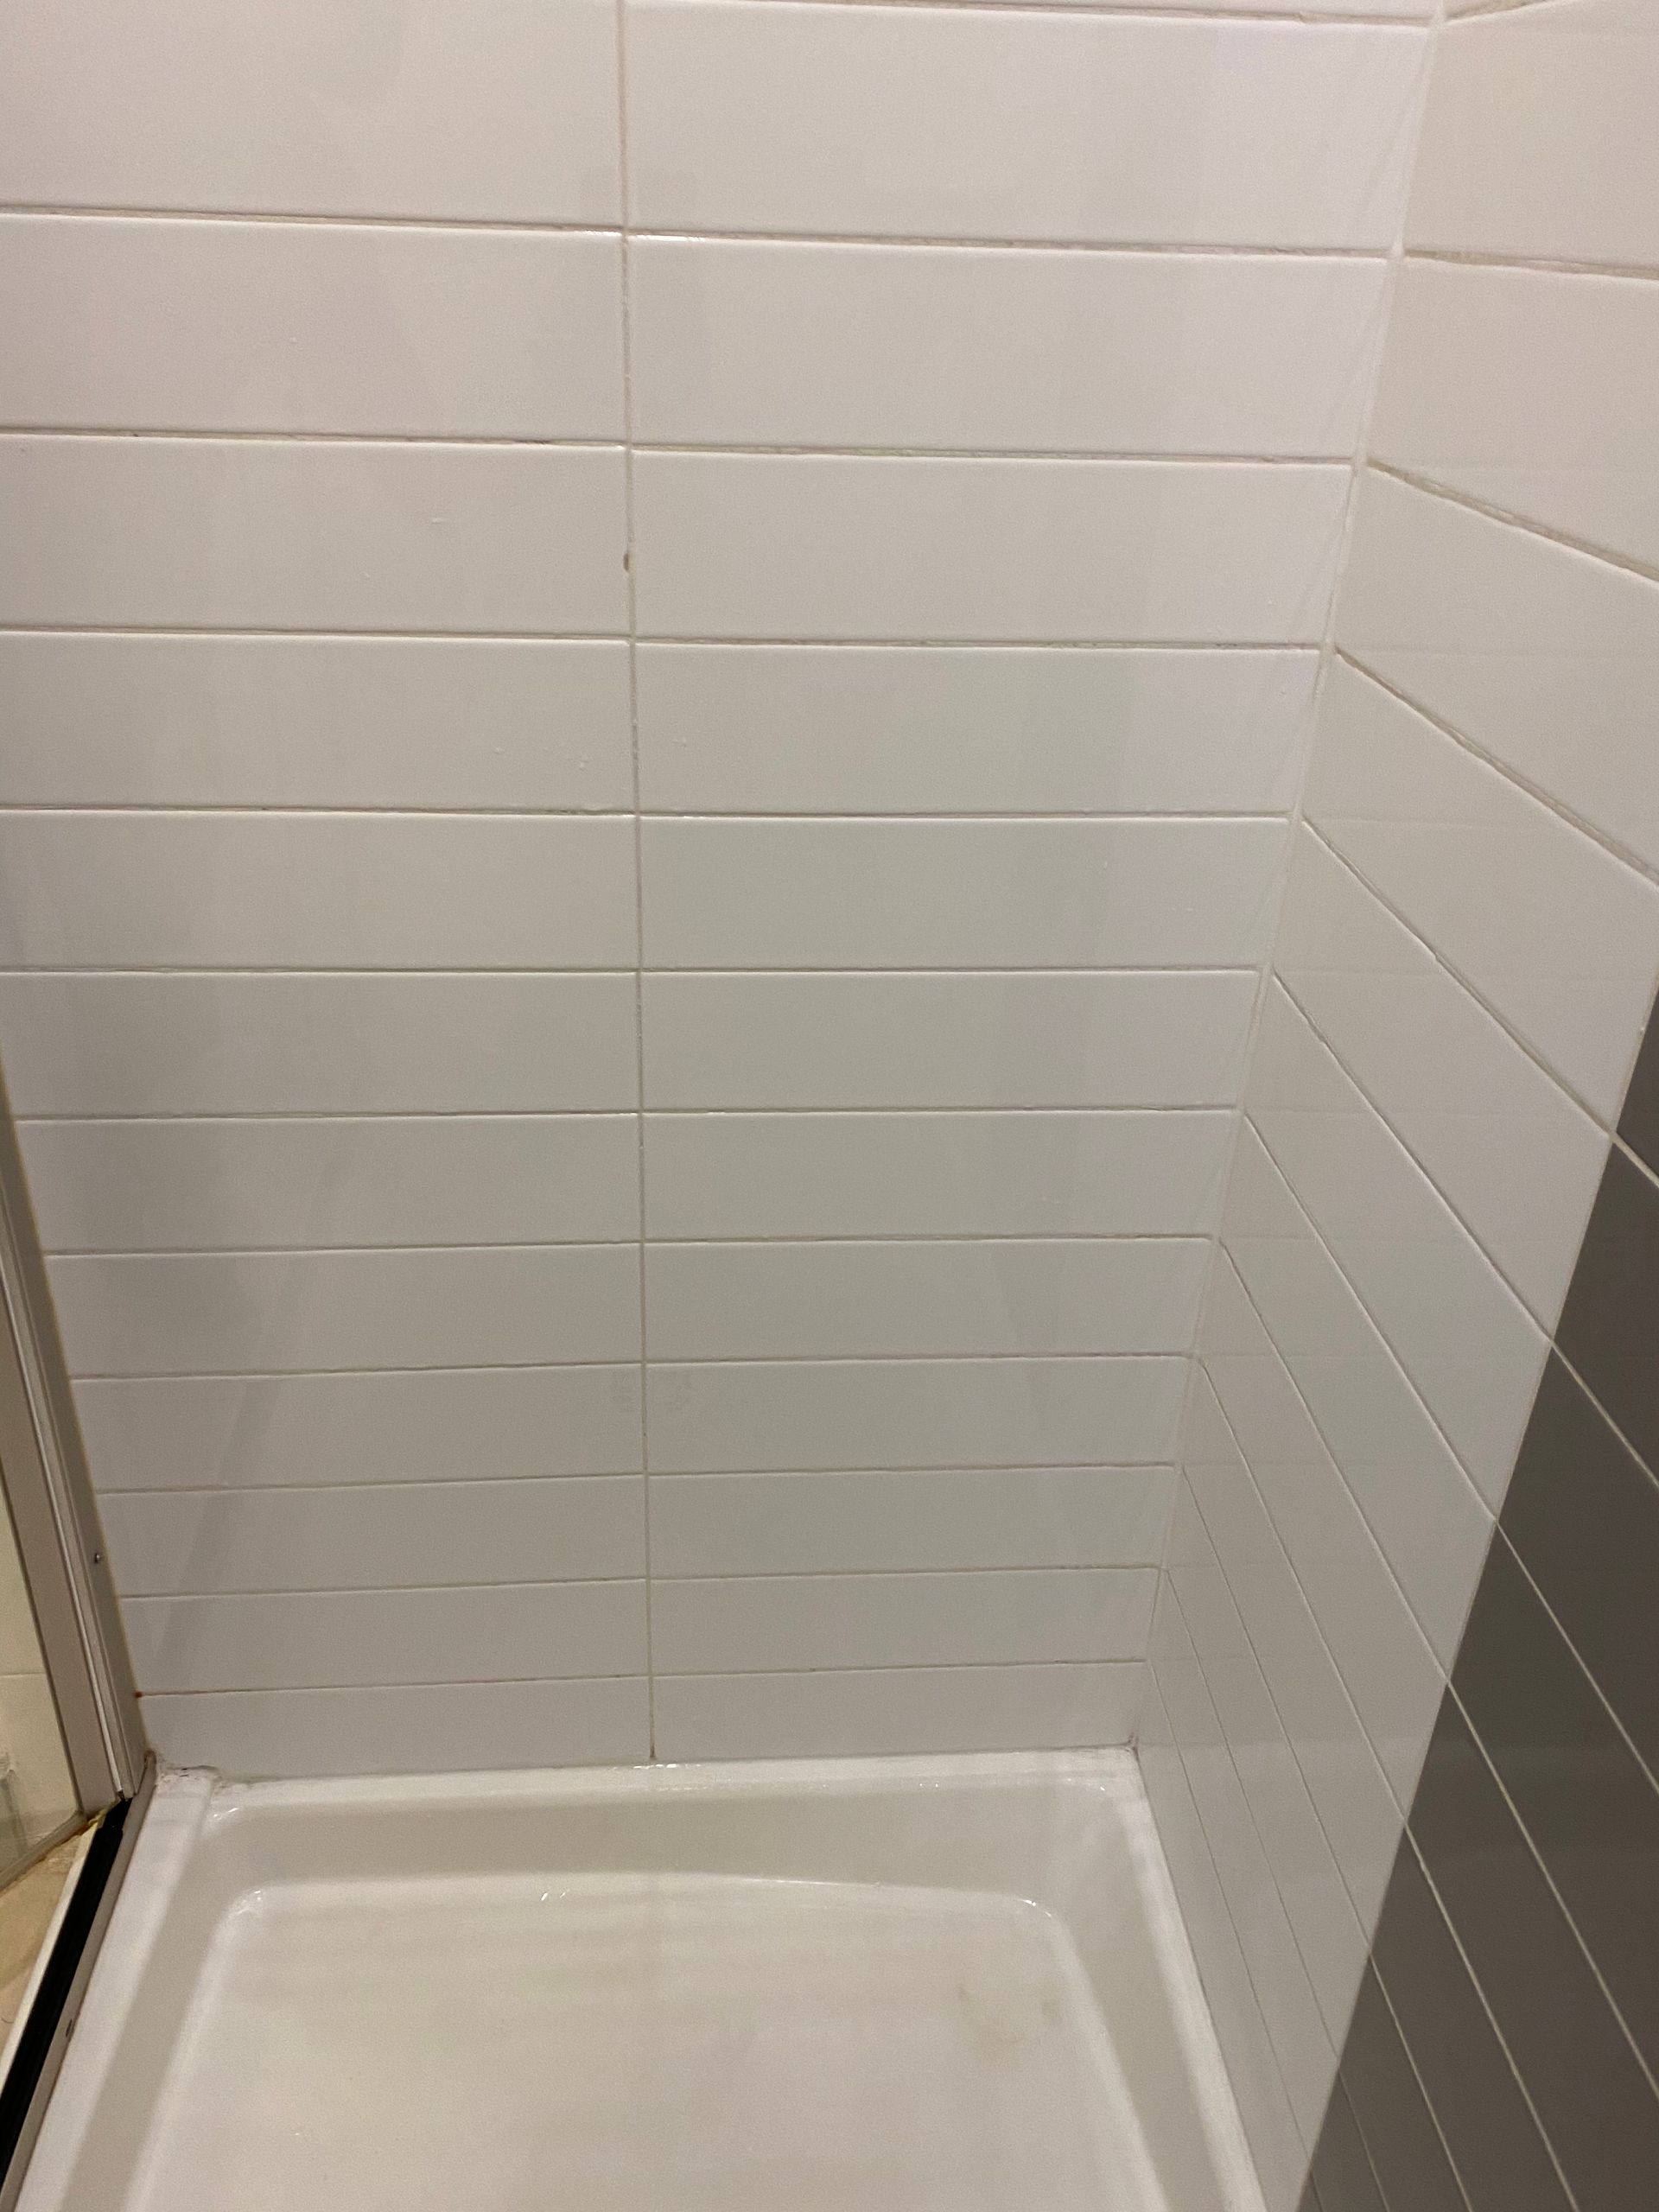 Clean tile | Lutz, FL | Our Clean Home